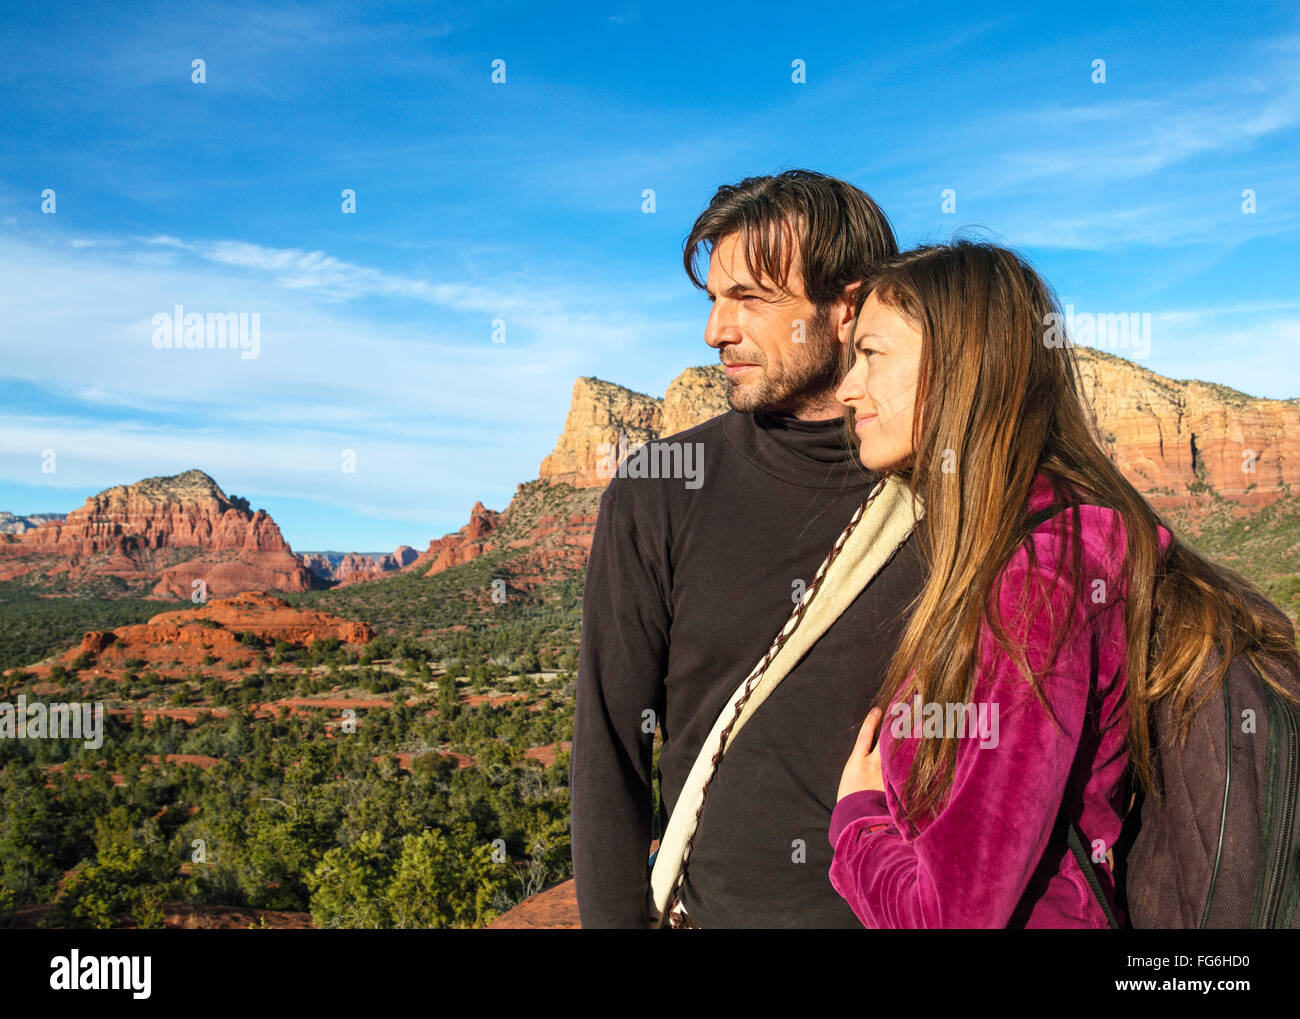 Touristen am Aussichtspunkt auf dem Bell Rock Climb Trail (nur zur redaktionellen Verwendung) Stockfoto